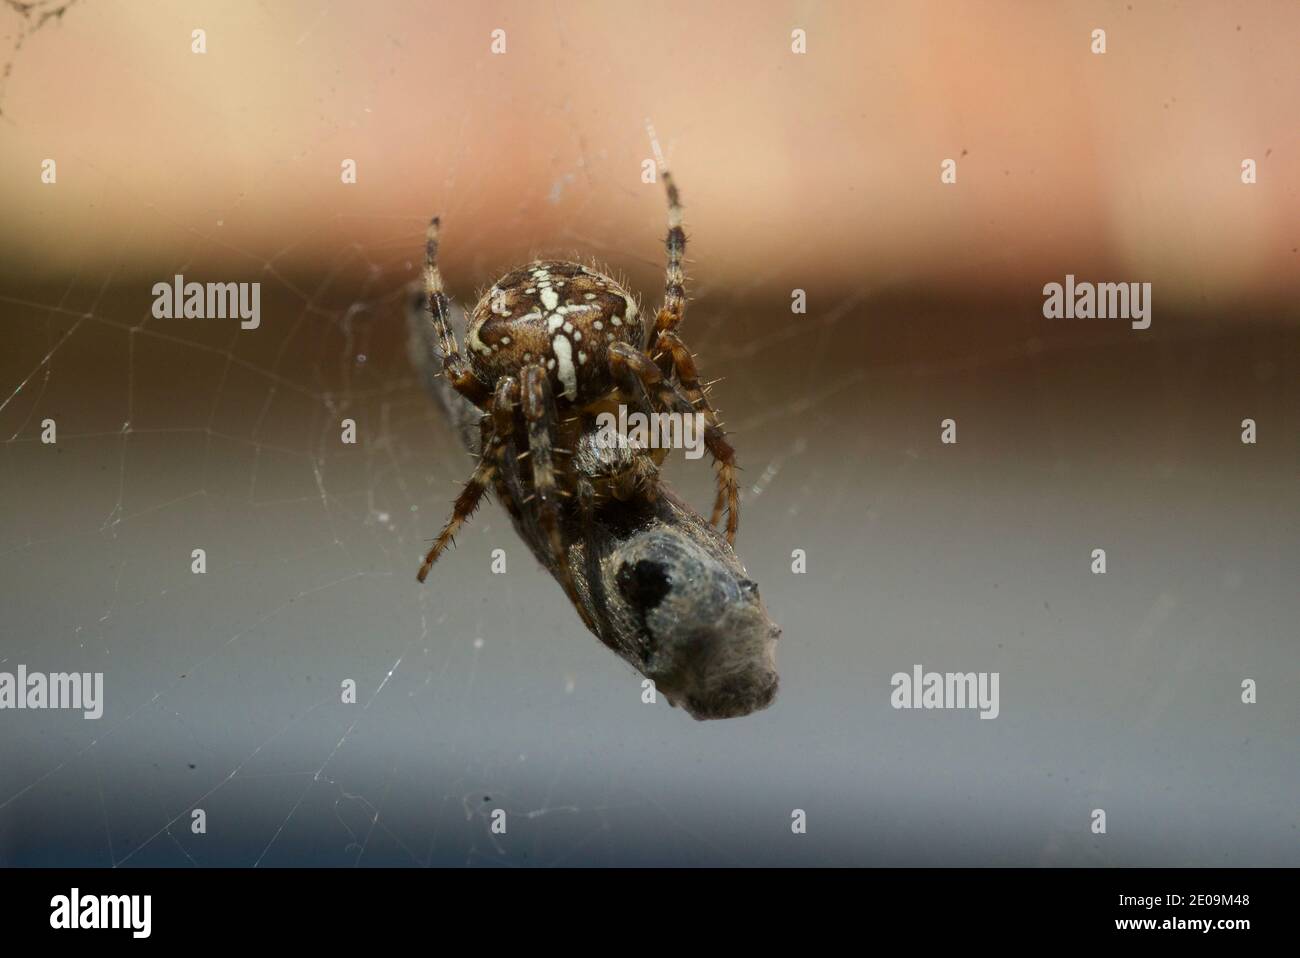 Ragno giardino europeo che avvolge una mosca nella sua rete, macro primo piano scatto. Un ragno che avvolge una mosca in una tela di seta. Araneus diadematus. Tessitore d'orbo coronato. Foto Stock